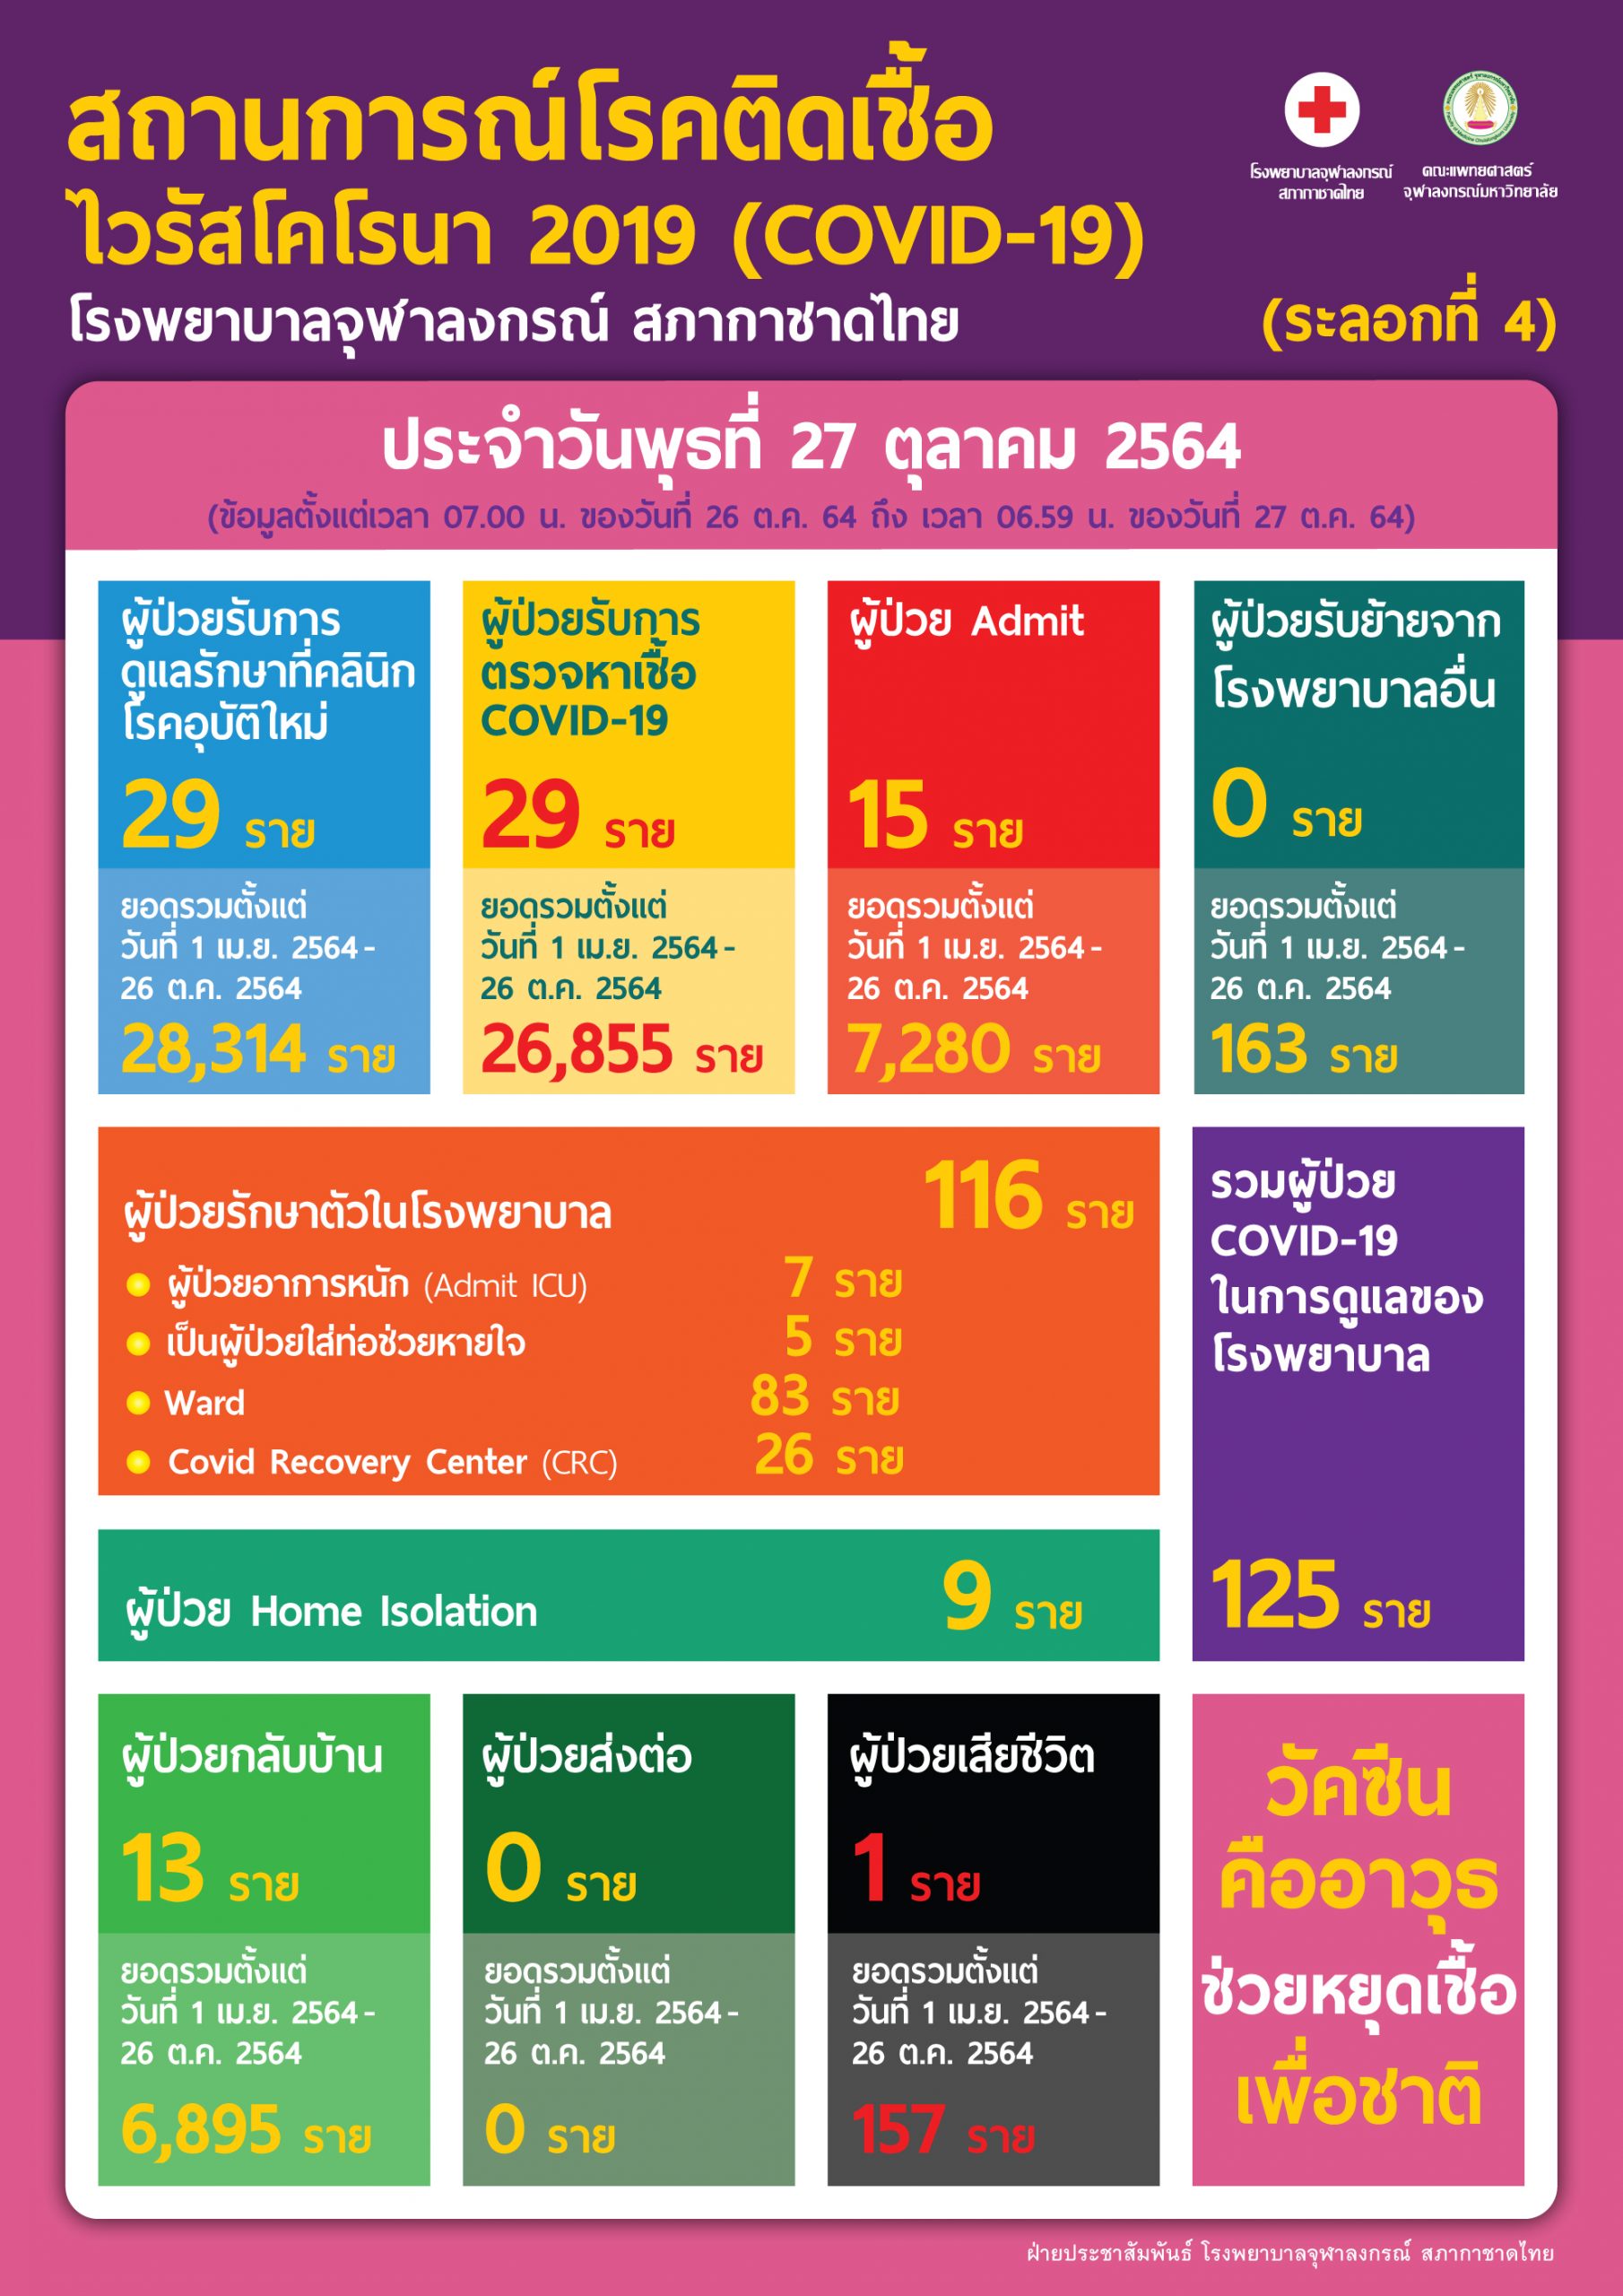 สถานการณ์โรคติดเชื้อไวรัสโคโรนา 2019 (COVID-19) (ระลอกที่ 4) โรงพยาบาลจุฬาลงกรณ์ สภากาชาดไทย ประจำวันพุธที่ 27 ตุลาคม 2564